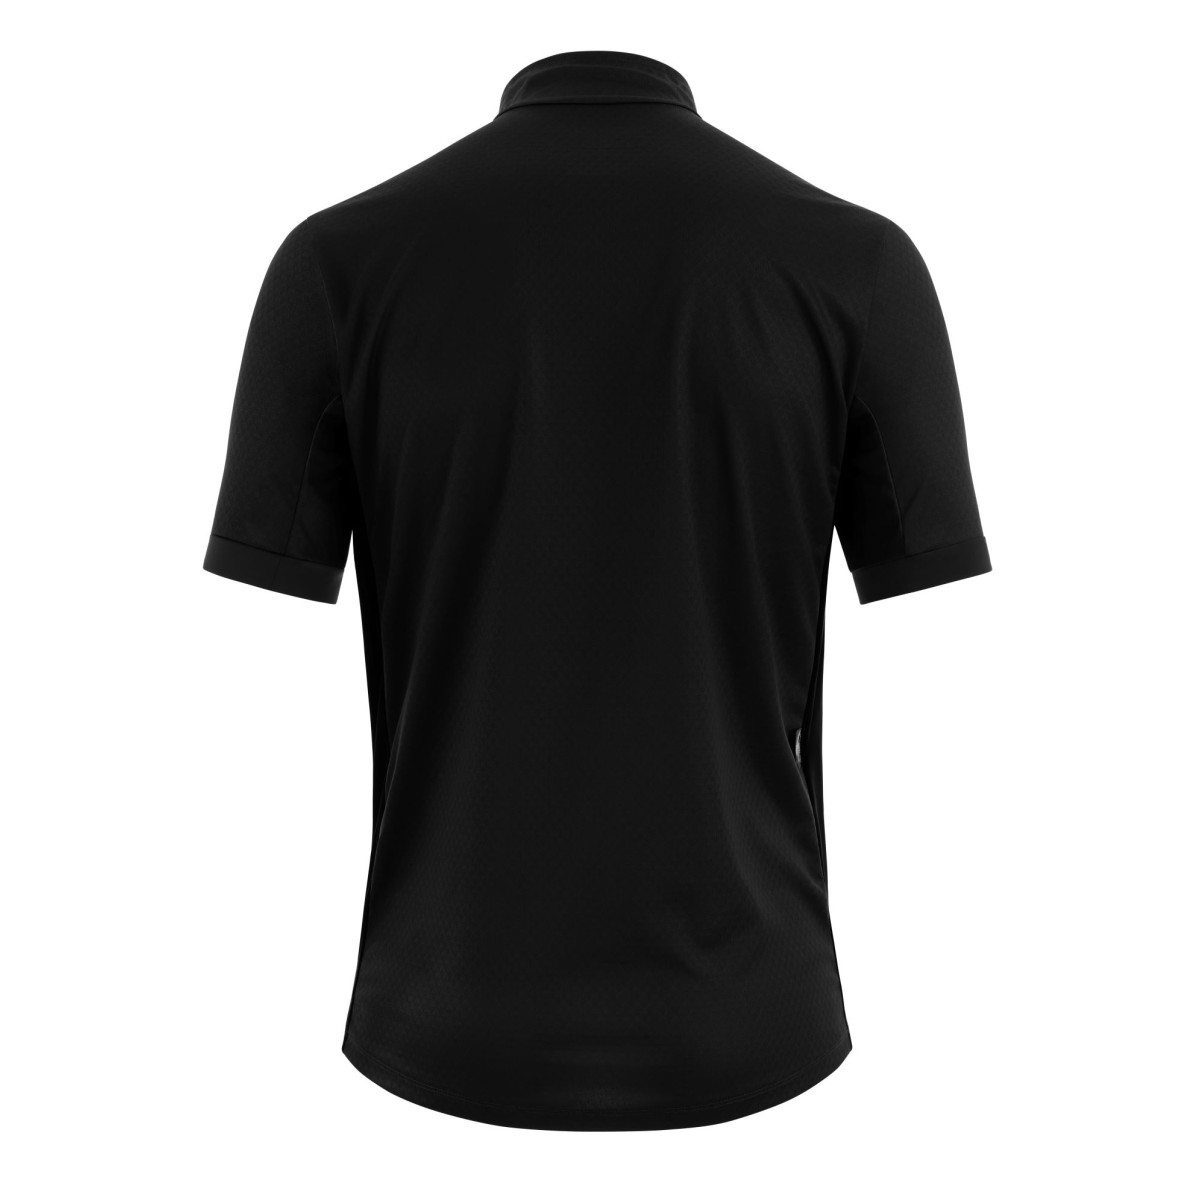 Assos Mille GTC c2 vyriški marškinėliai / Black Series